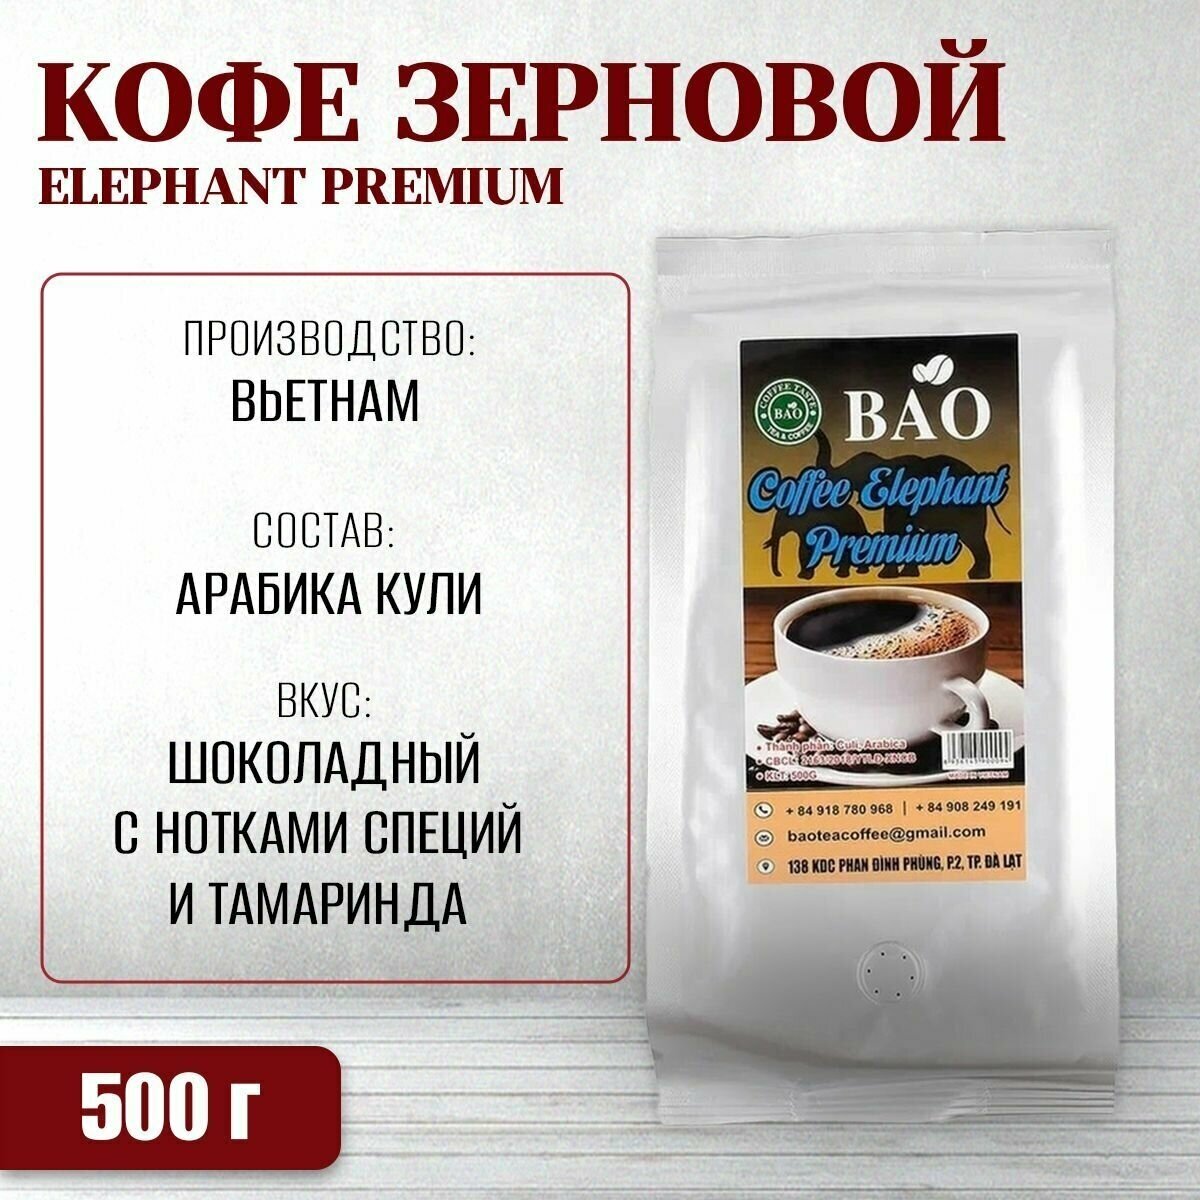 Вьетнамский зерновой кофе BAO - Слон Премиум Bao Tea Coffee (Elephant Premium), 500 г